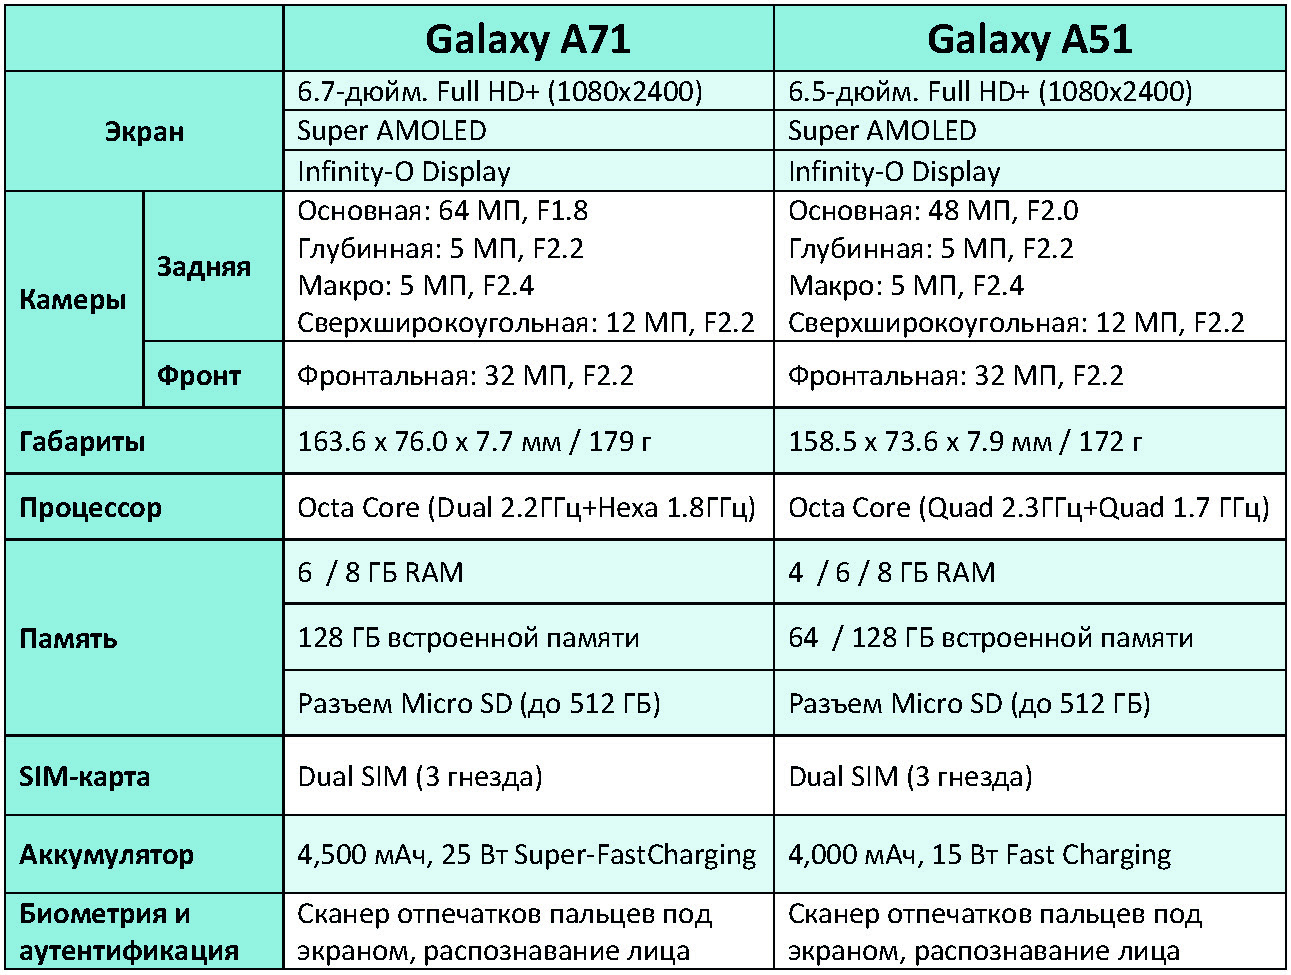 Самсунг а52 почему. Самсунг а51 характеристики. Samsung a51 характеристики. Самсунг а51 характеристики характеристики. Процессор галакси а51.